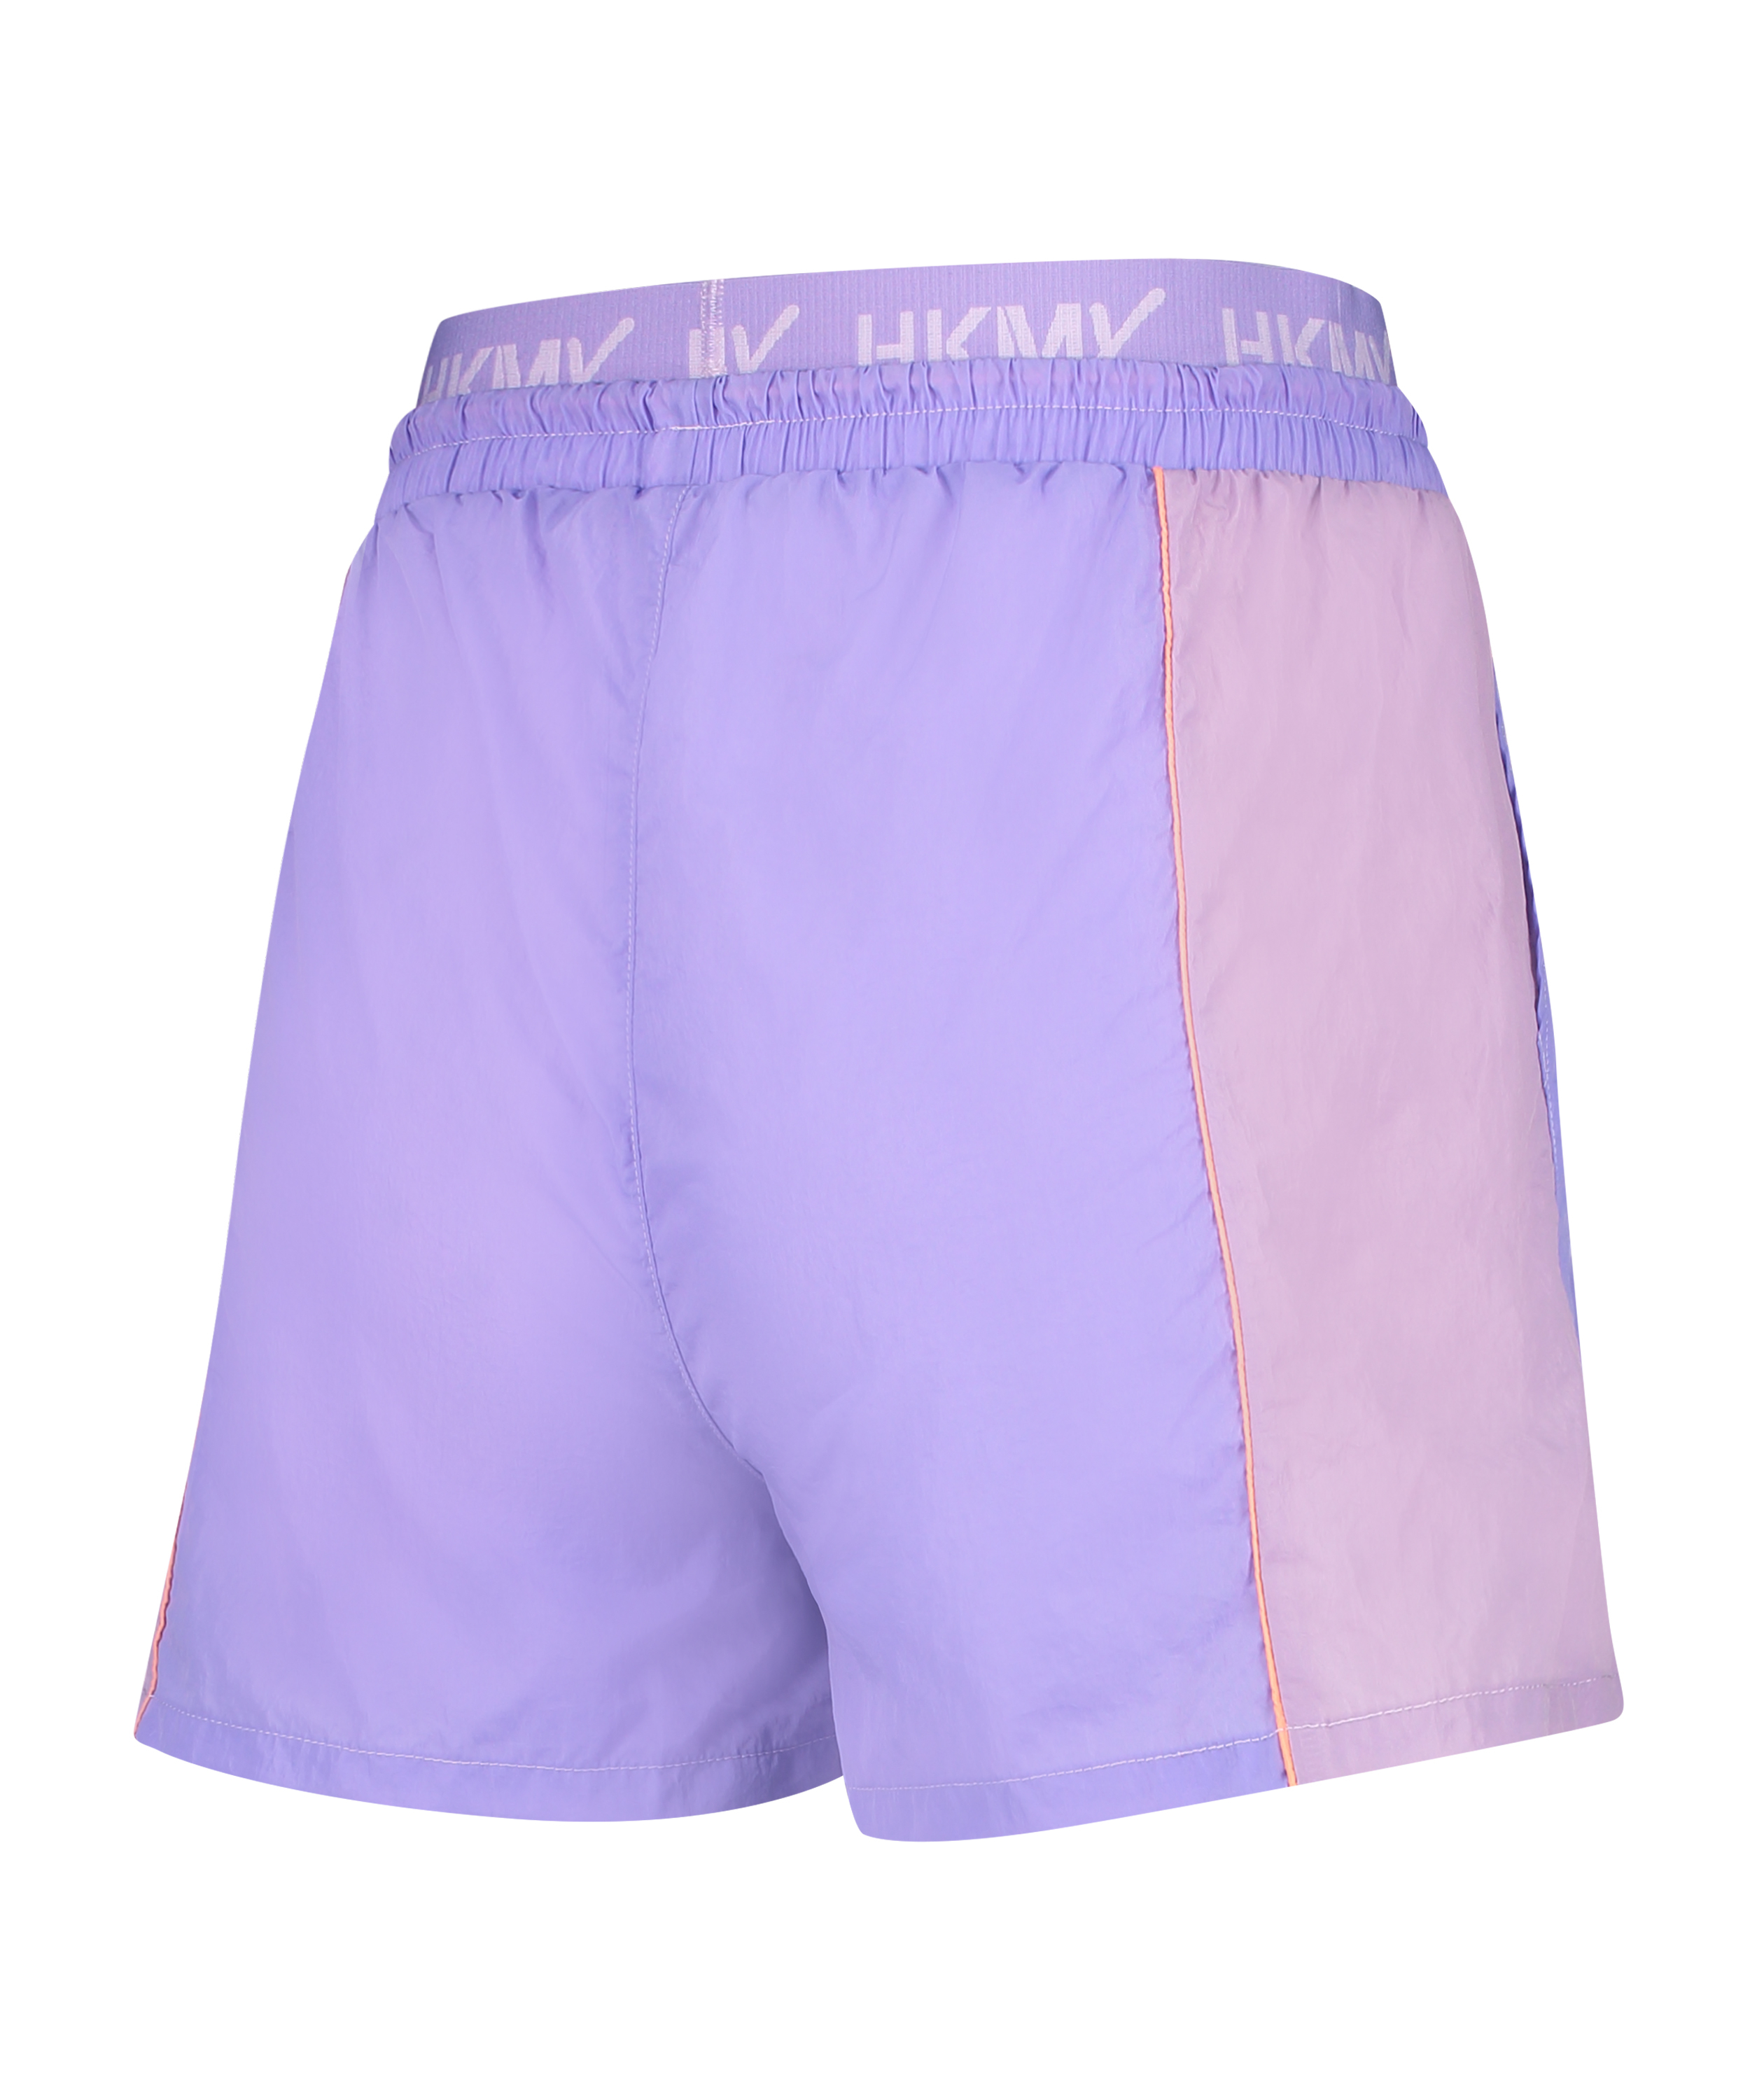 HKMX sport shorts, Purple, main